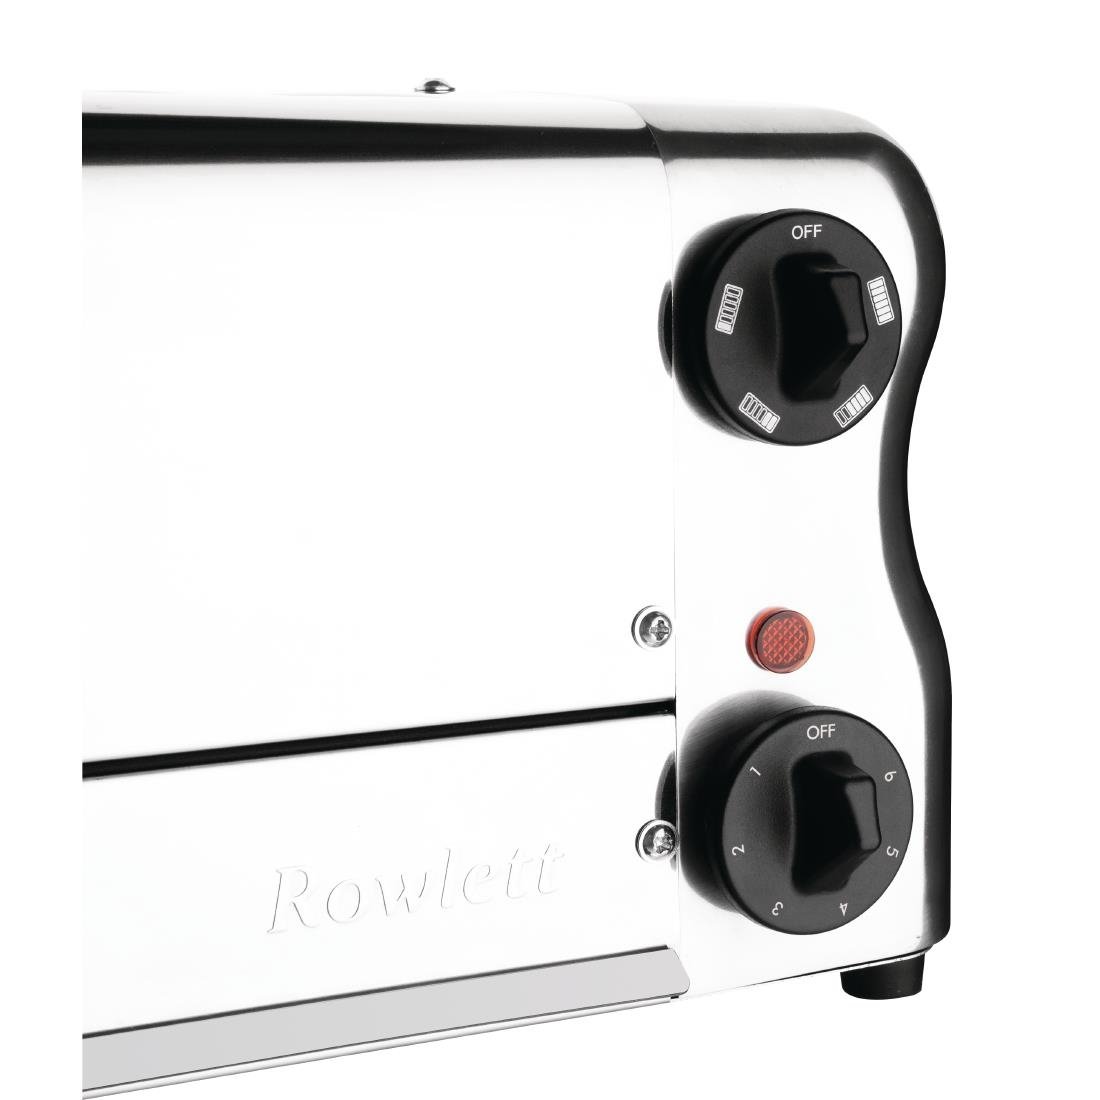 Rowlett Esprit 6 Slot Toaster Chrom mit 2 zusätzlichen Elementen und Sandwichkäfig